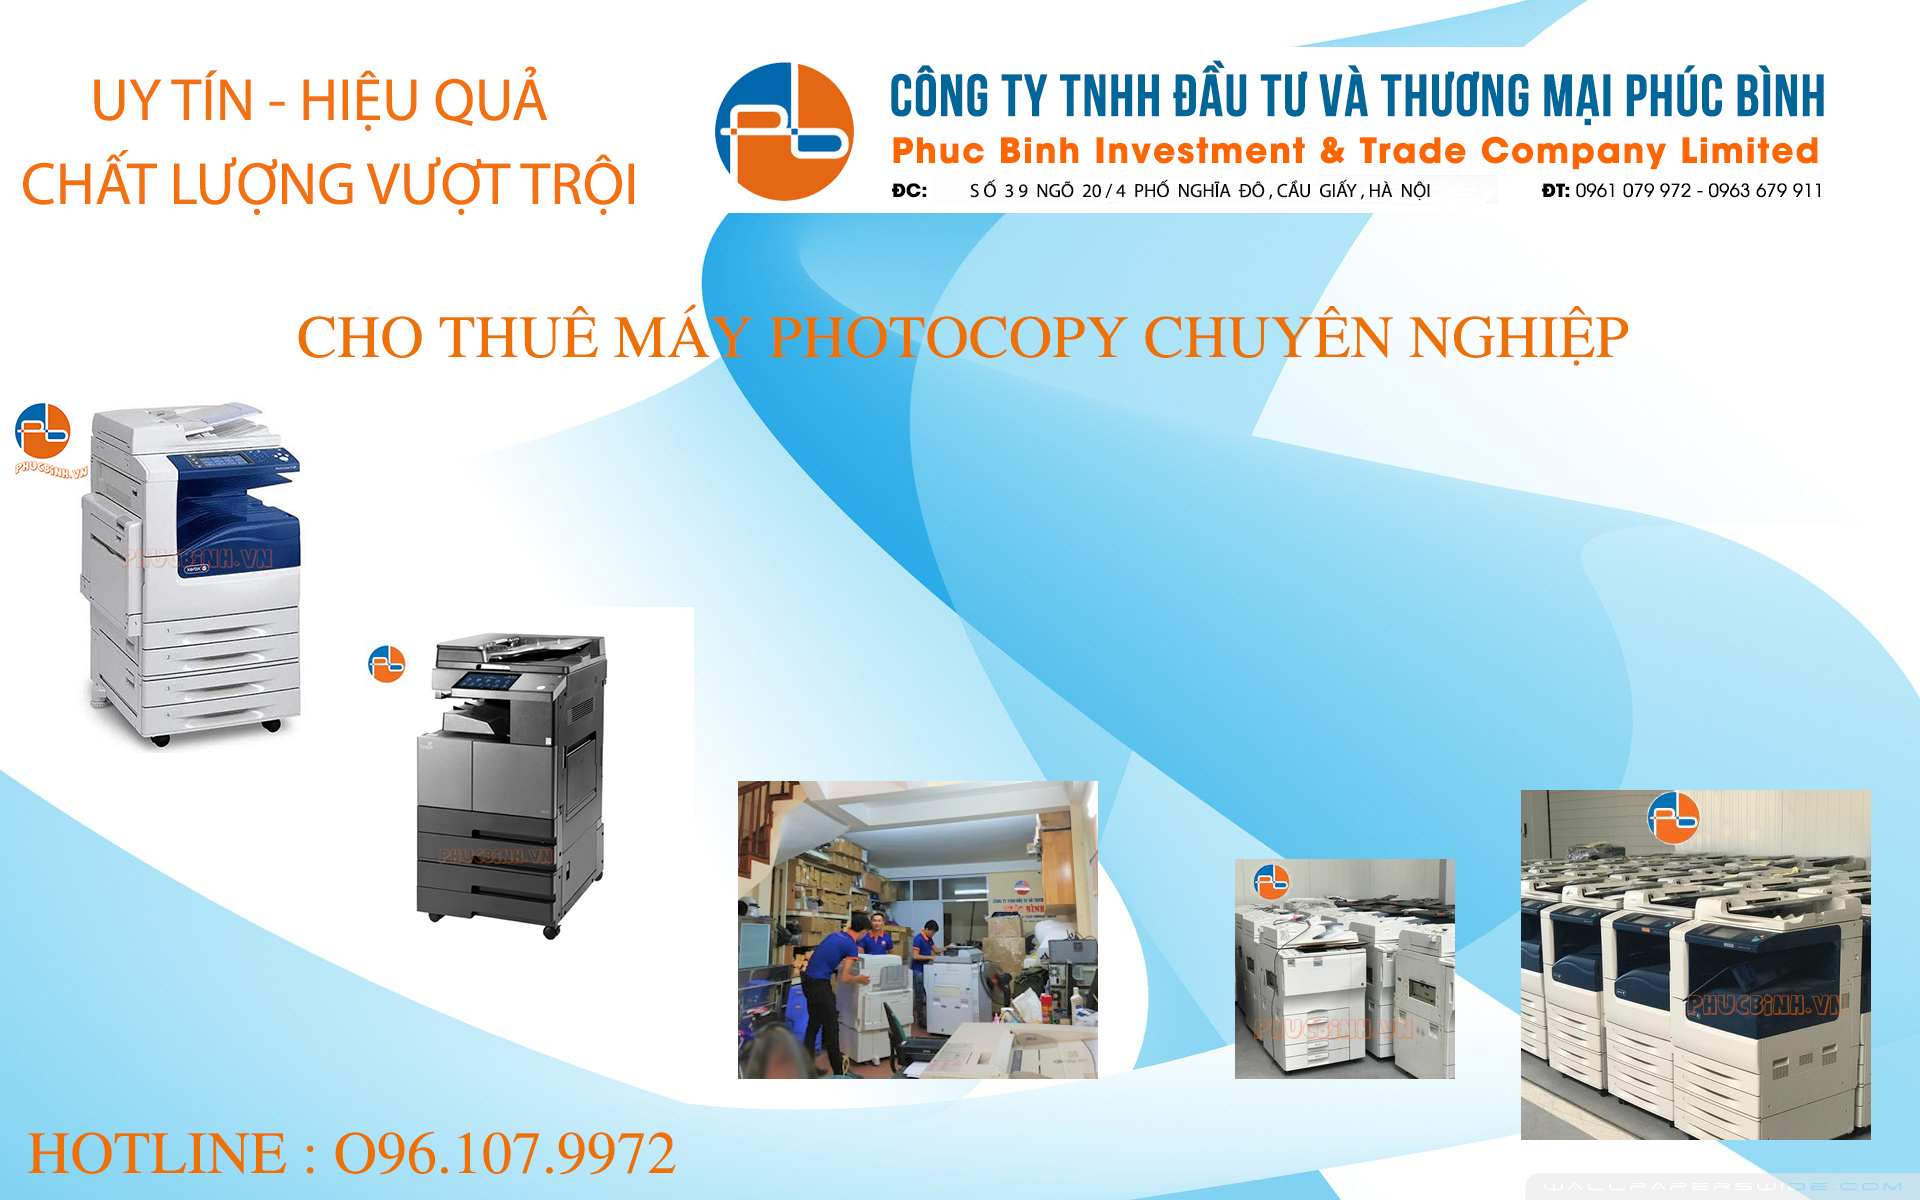 Cho thuê máy photocopy tại Hà Nội uy tín